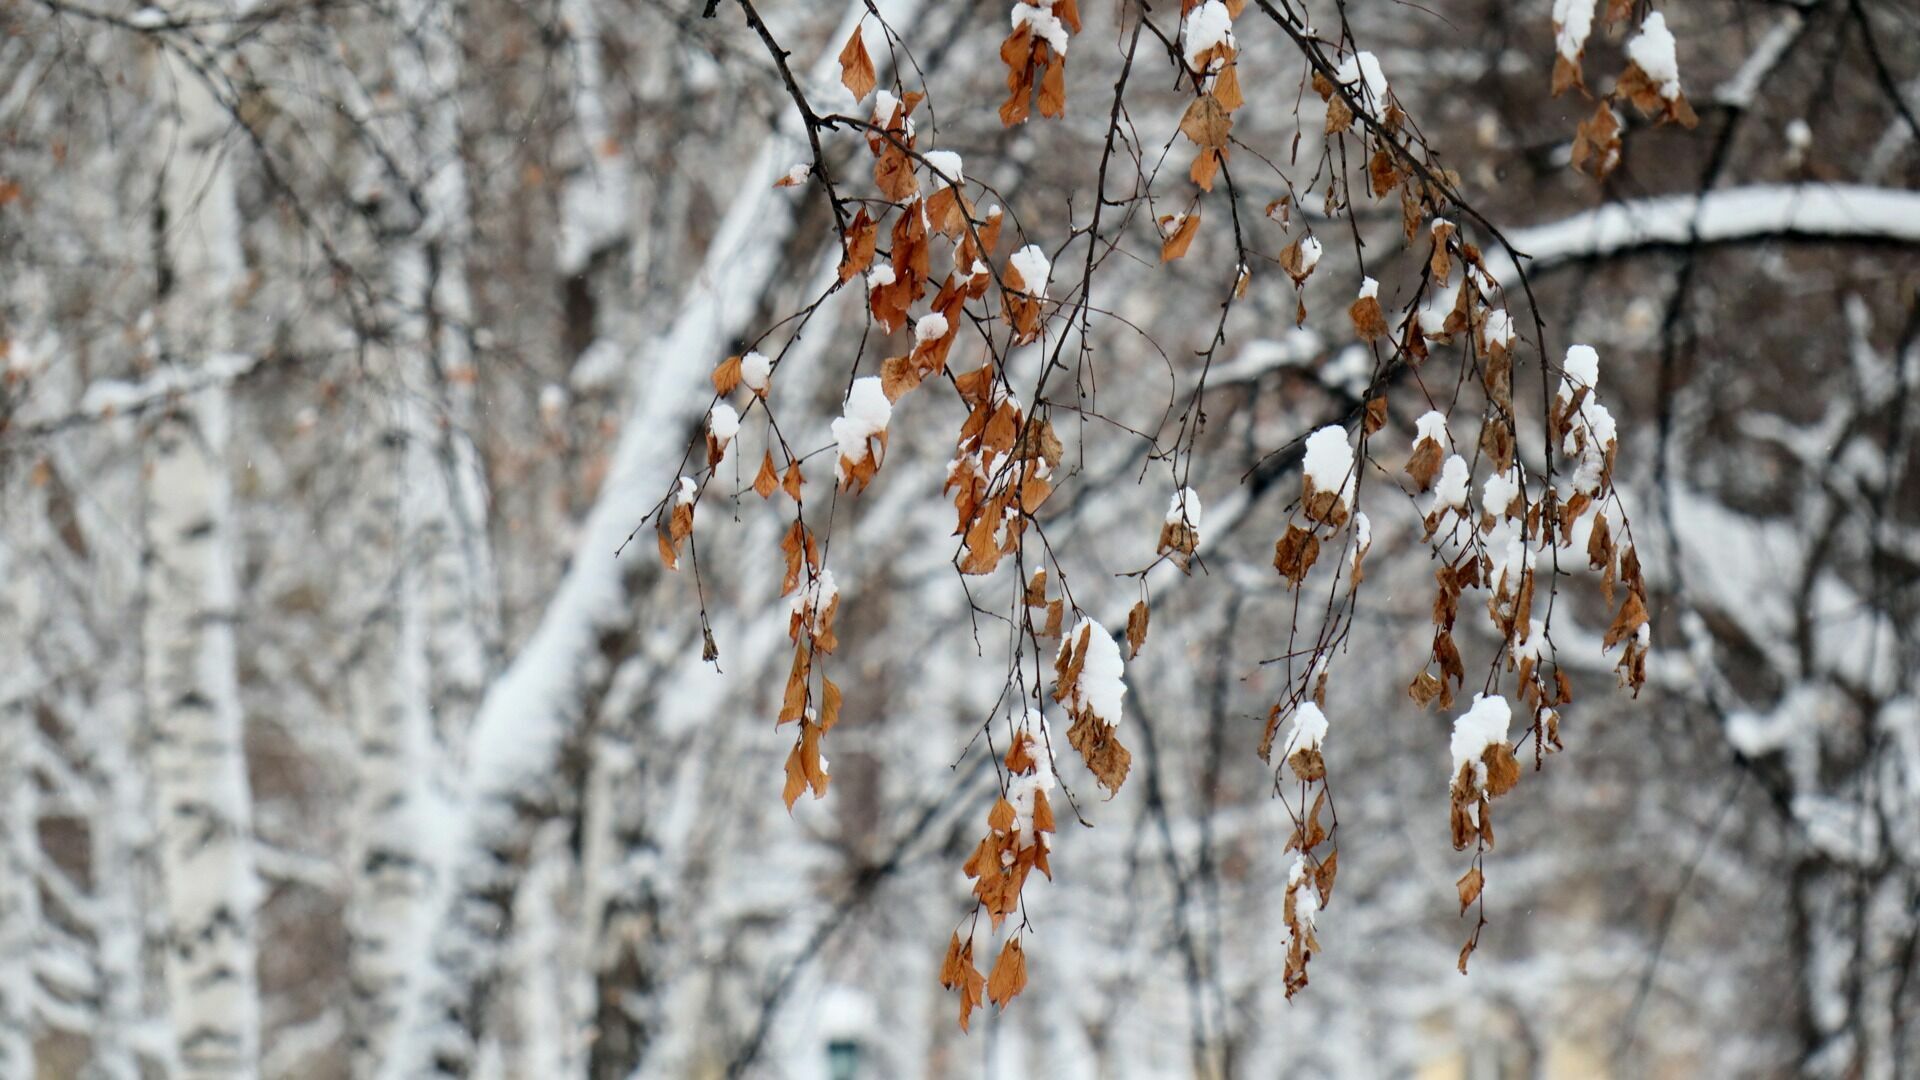 МЧС выпустило предупреждение для жителей Карелии из-за снегопада